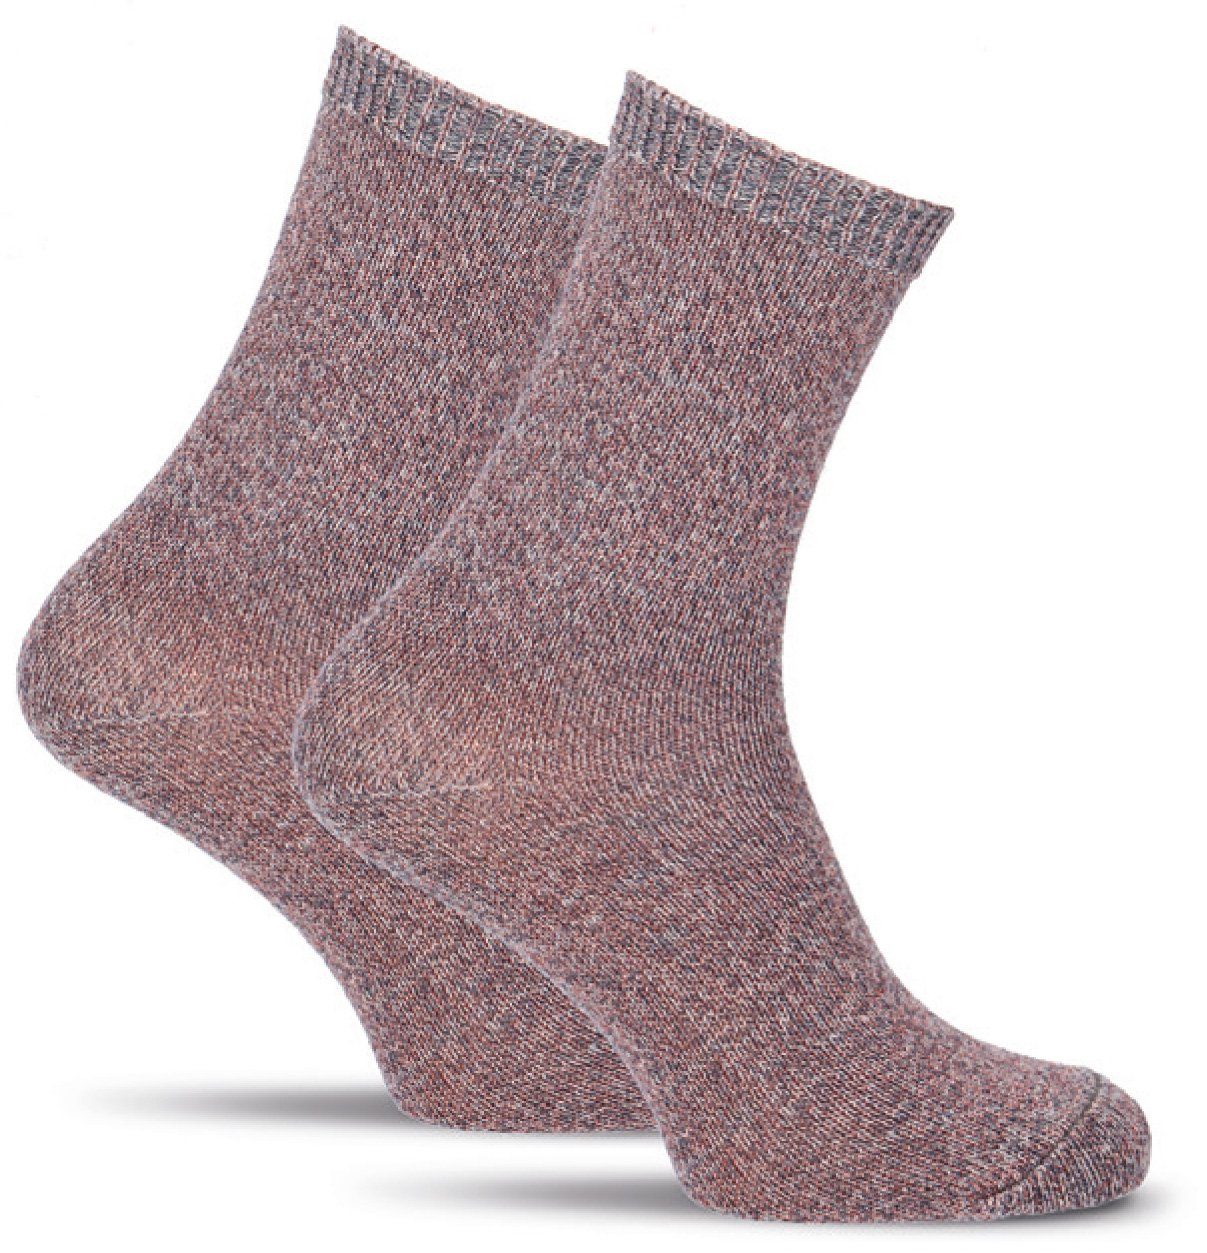 Wäsche/Bademode Strumpfhosen Tamaris Feinstrumpfhose Boot-Socken mit Glitzereffekt 250 DEN (1 Stück) aus hautfreundlicher Baumwo